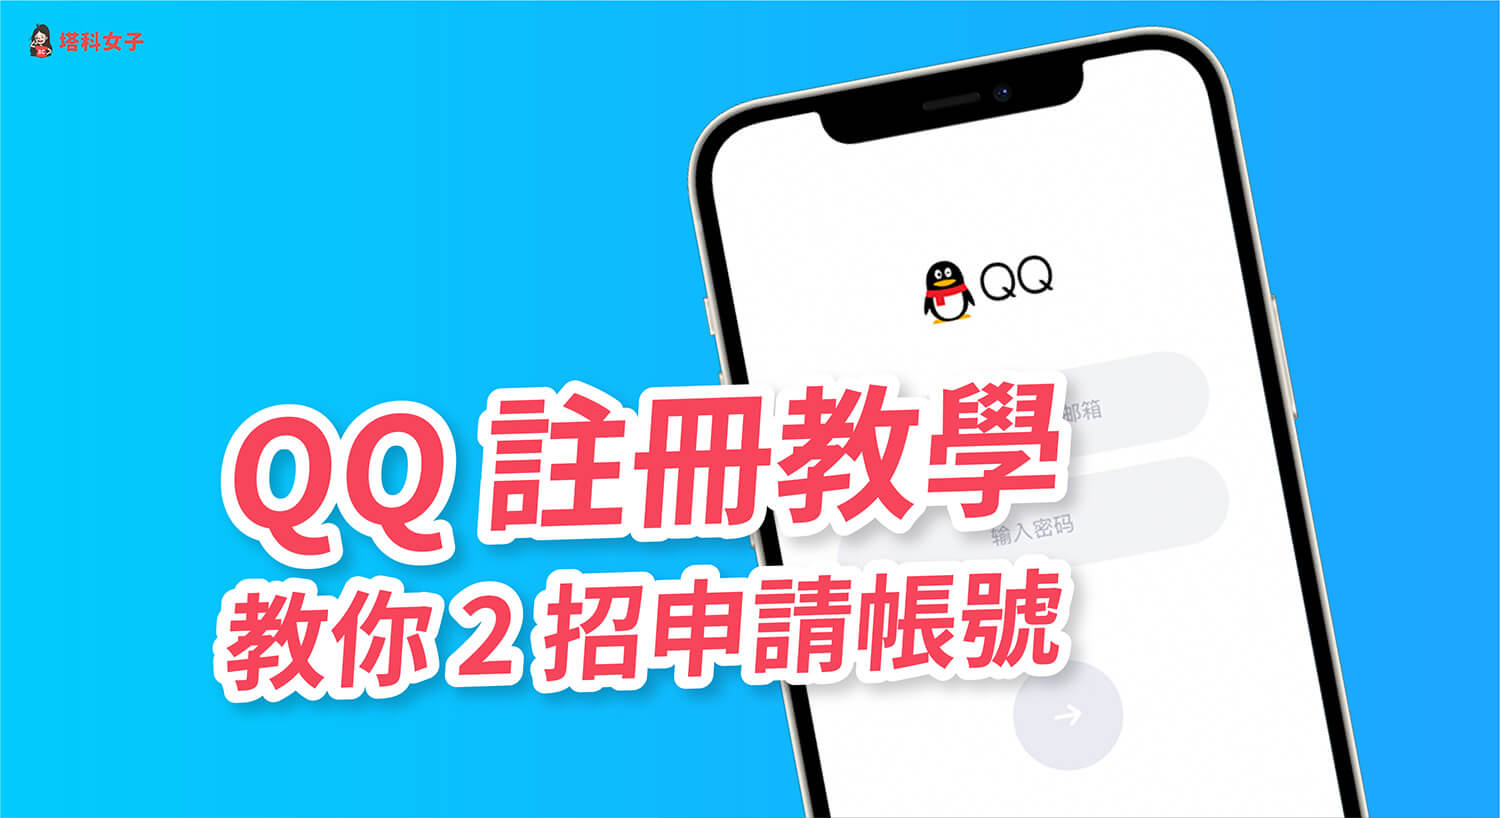 QQ 註冊如何免驗證？教你這 2 招在台灣快速註冊申請 QQ 帳號